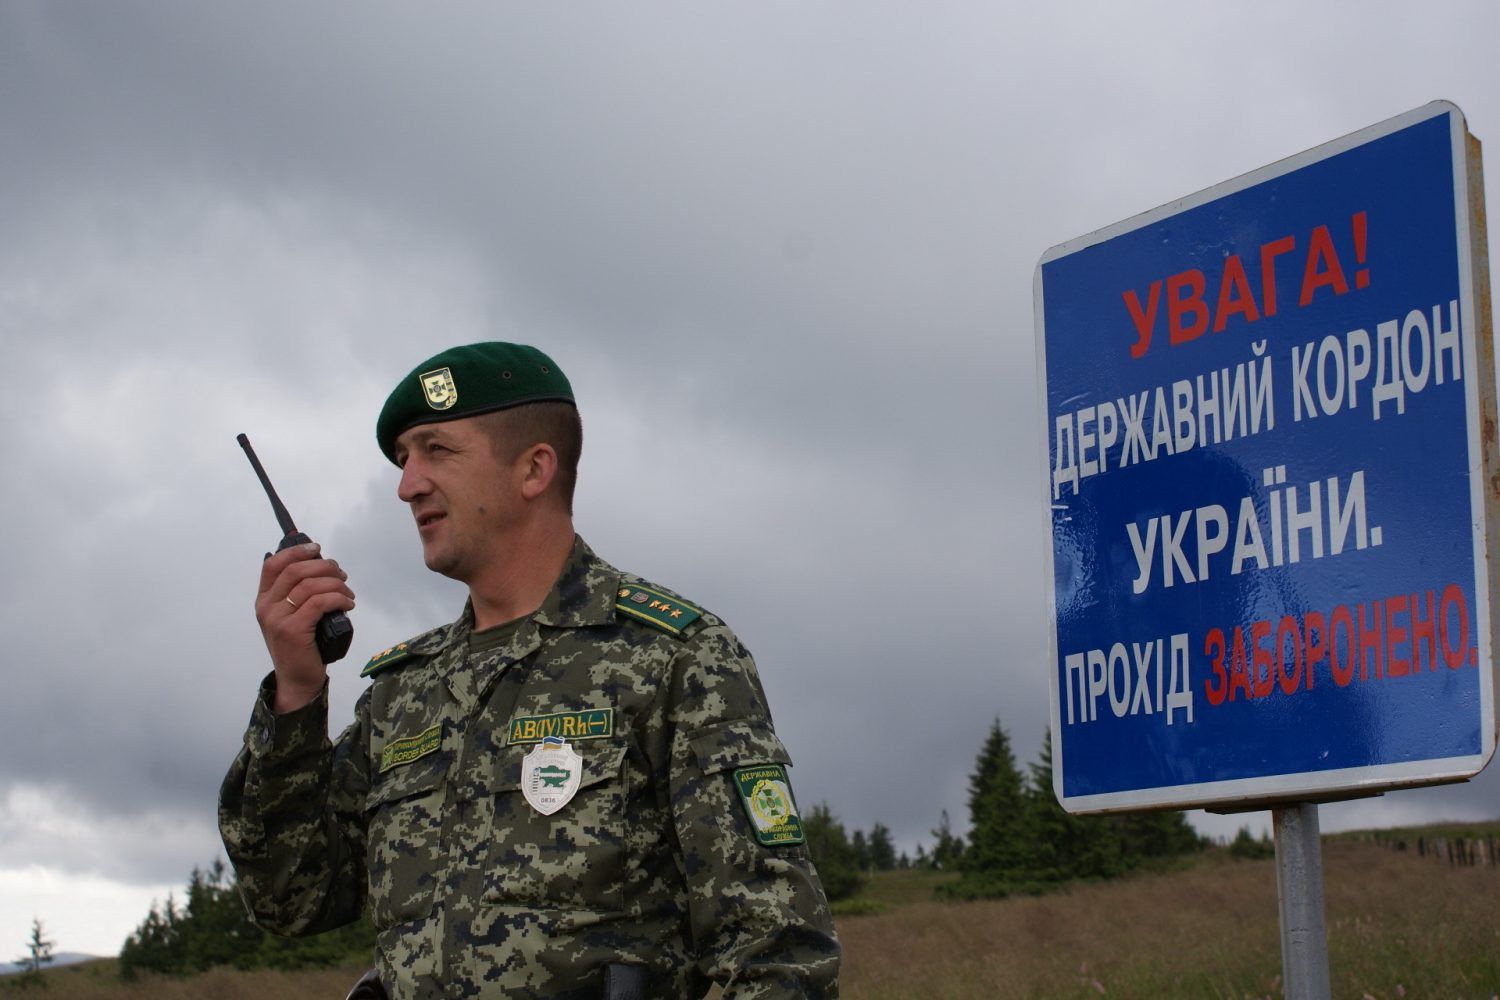 Пограничники озвучили цифру, сколько нелегалов задержали за годы независимости Украины